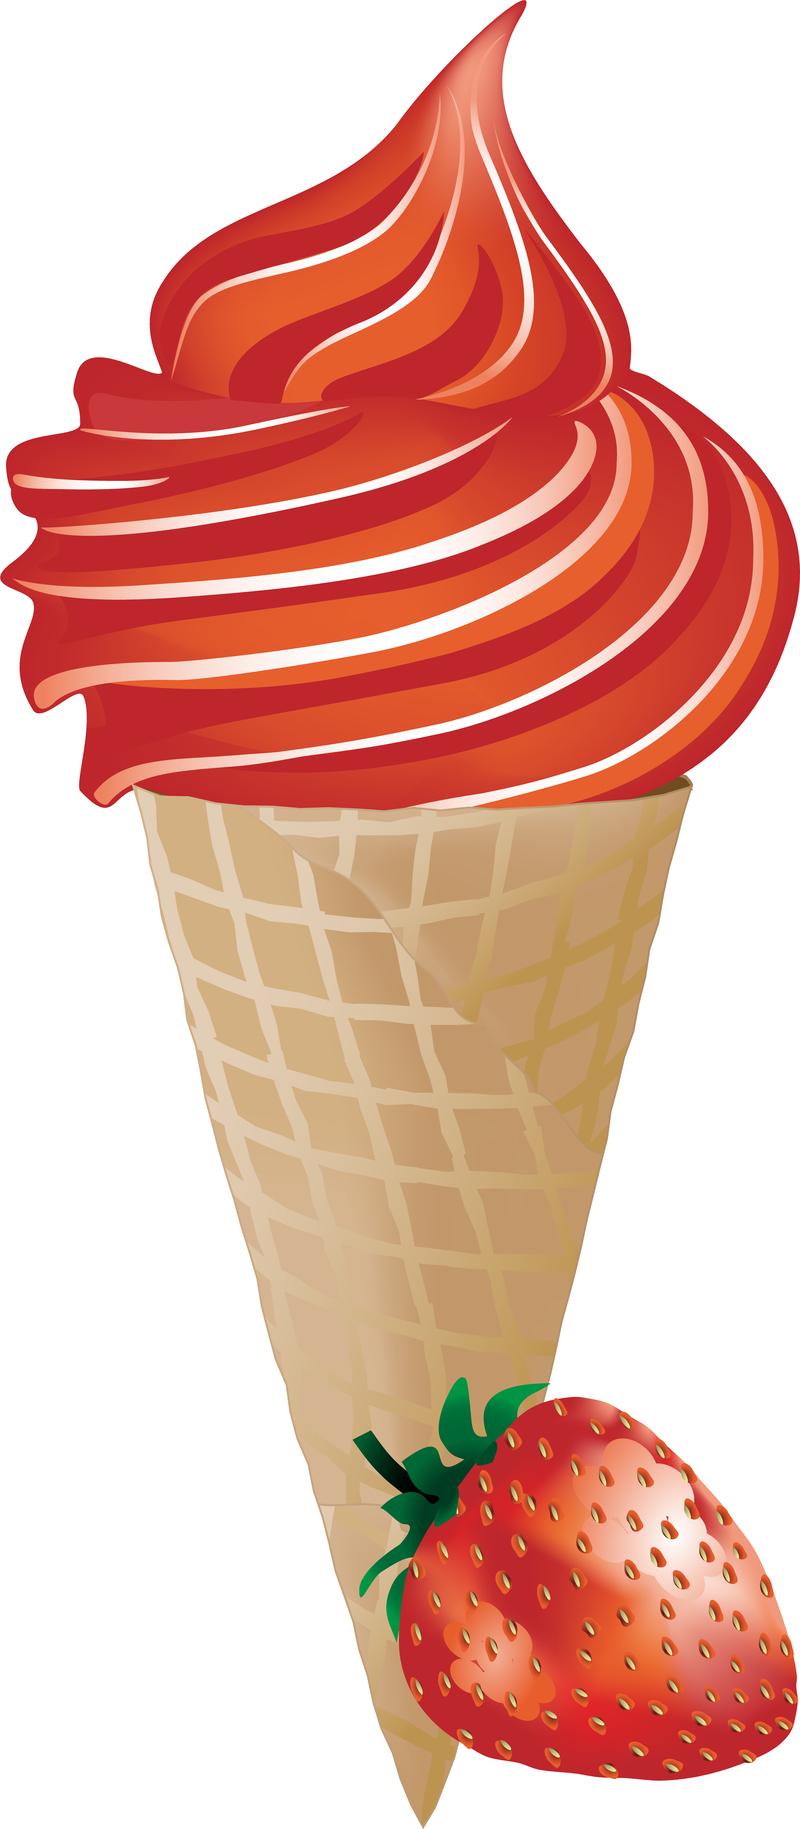 Ice Cream Popsicles Vector - Free Vector Download | Qvectors.net